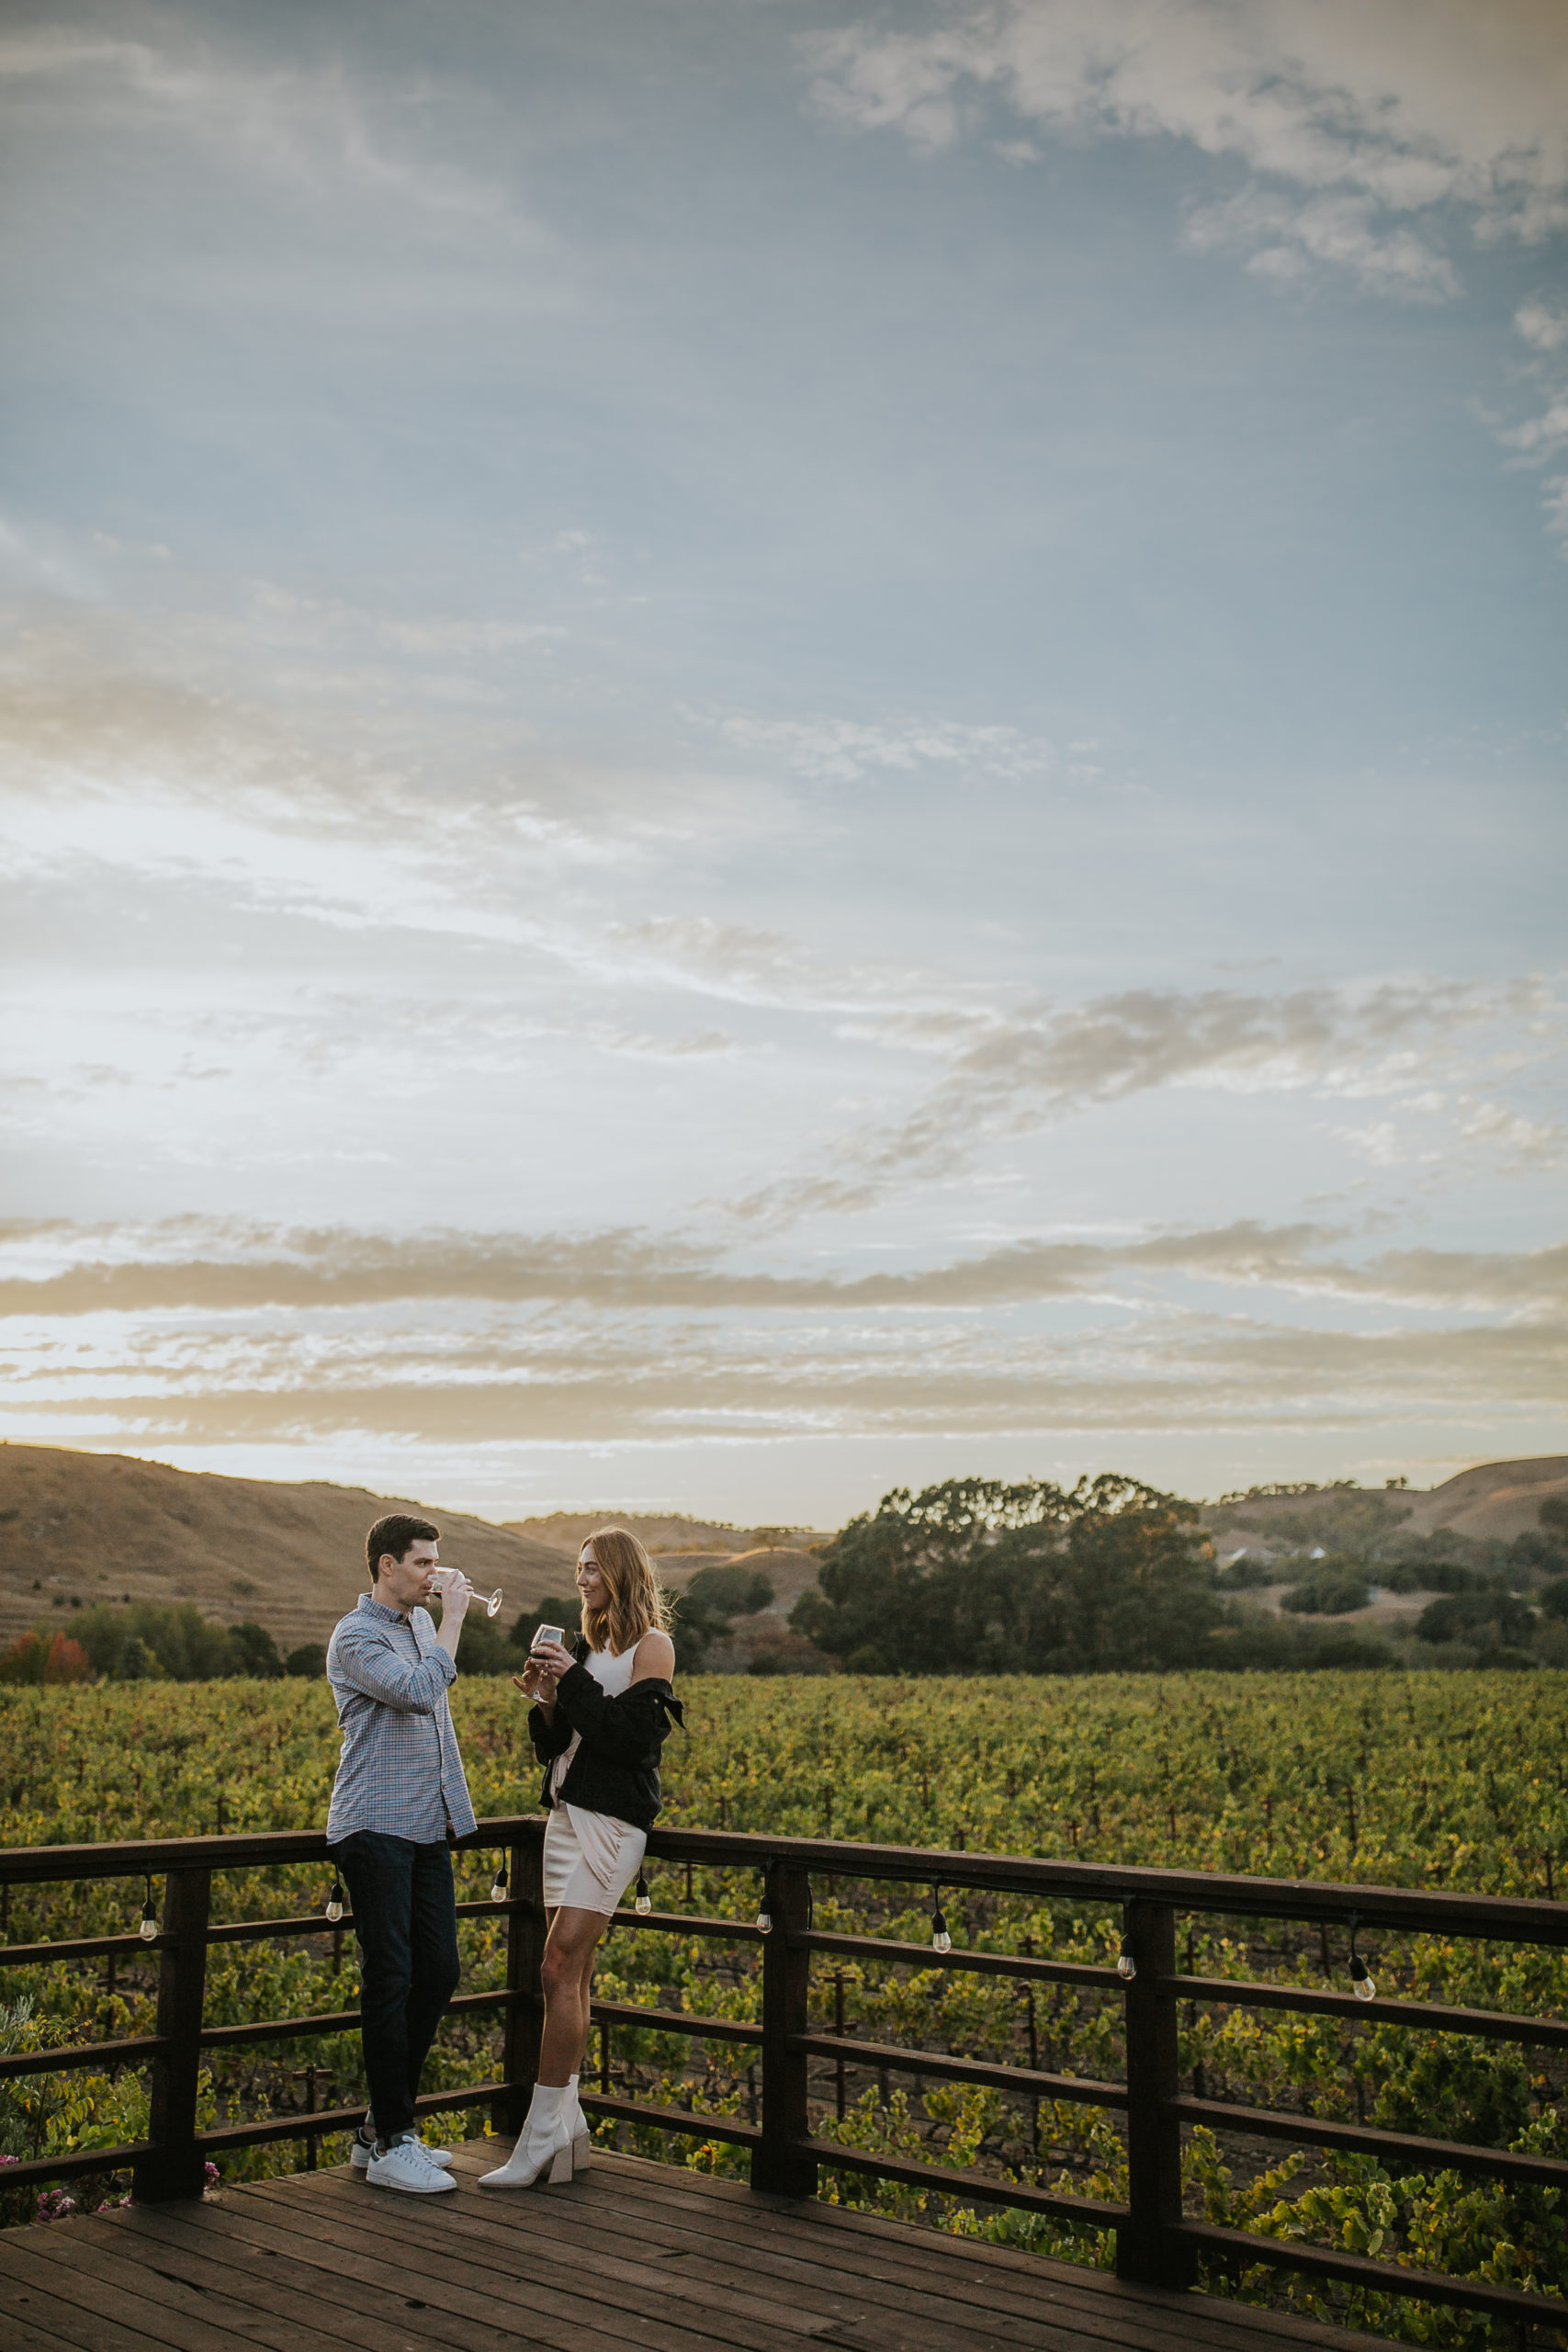 rebecca skidgel photograpy napa wedding photographer engagement session vineyards couple enjoying wine